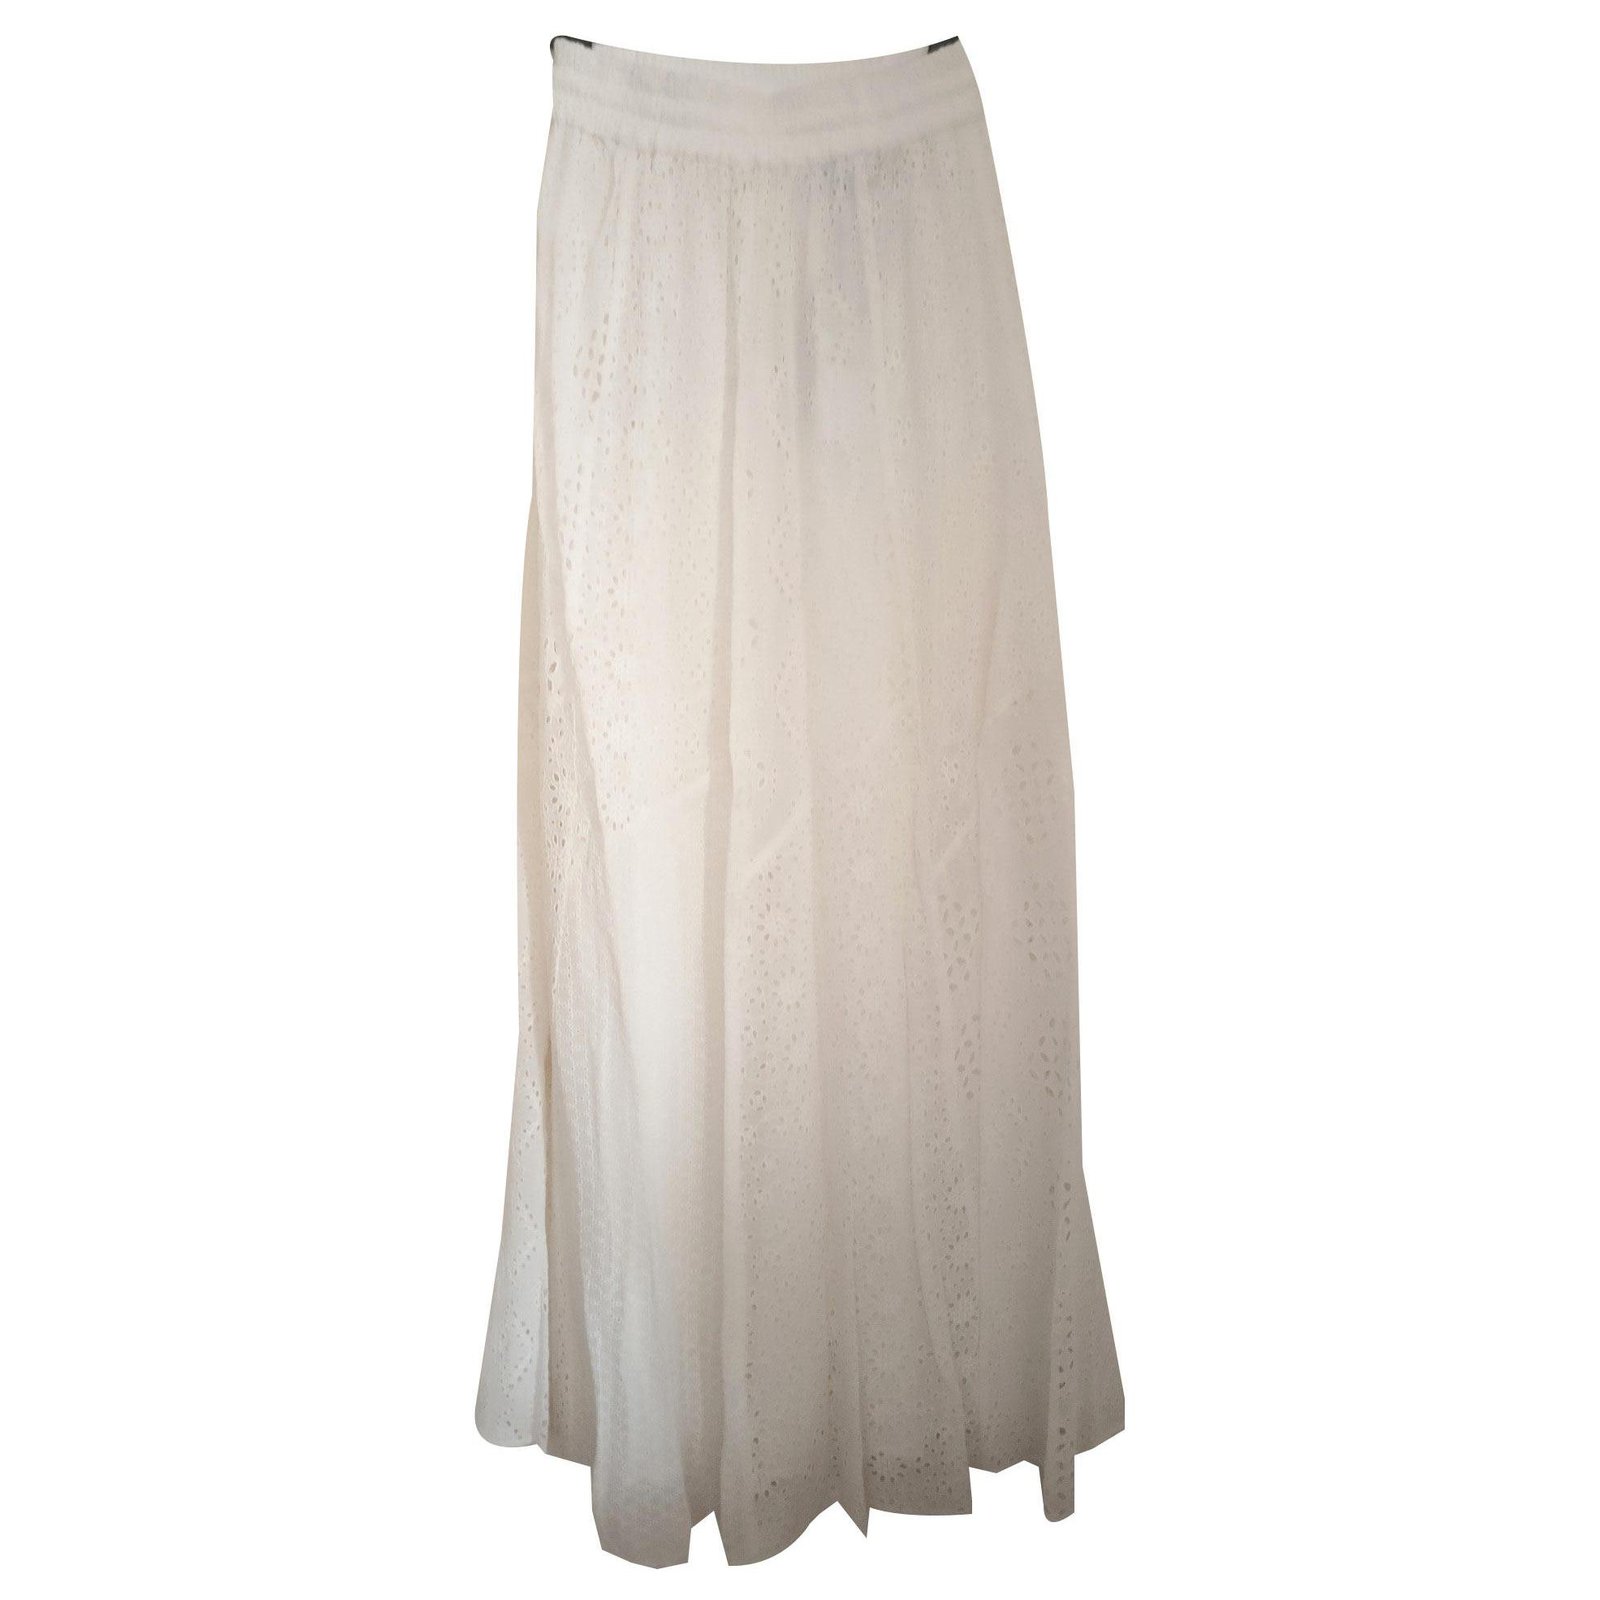 Zara Skirts Skirts Cotton,Viscose White 